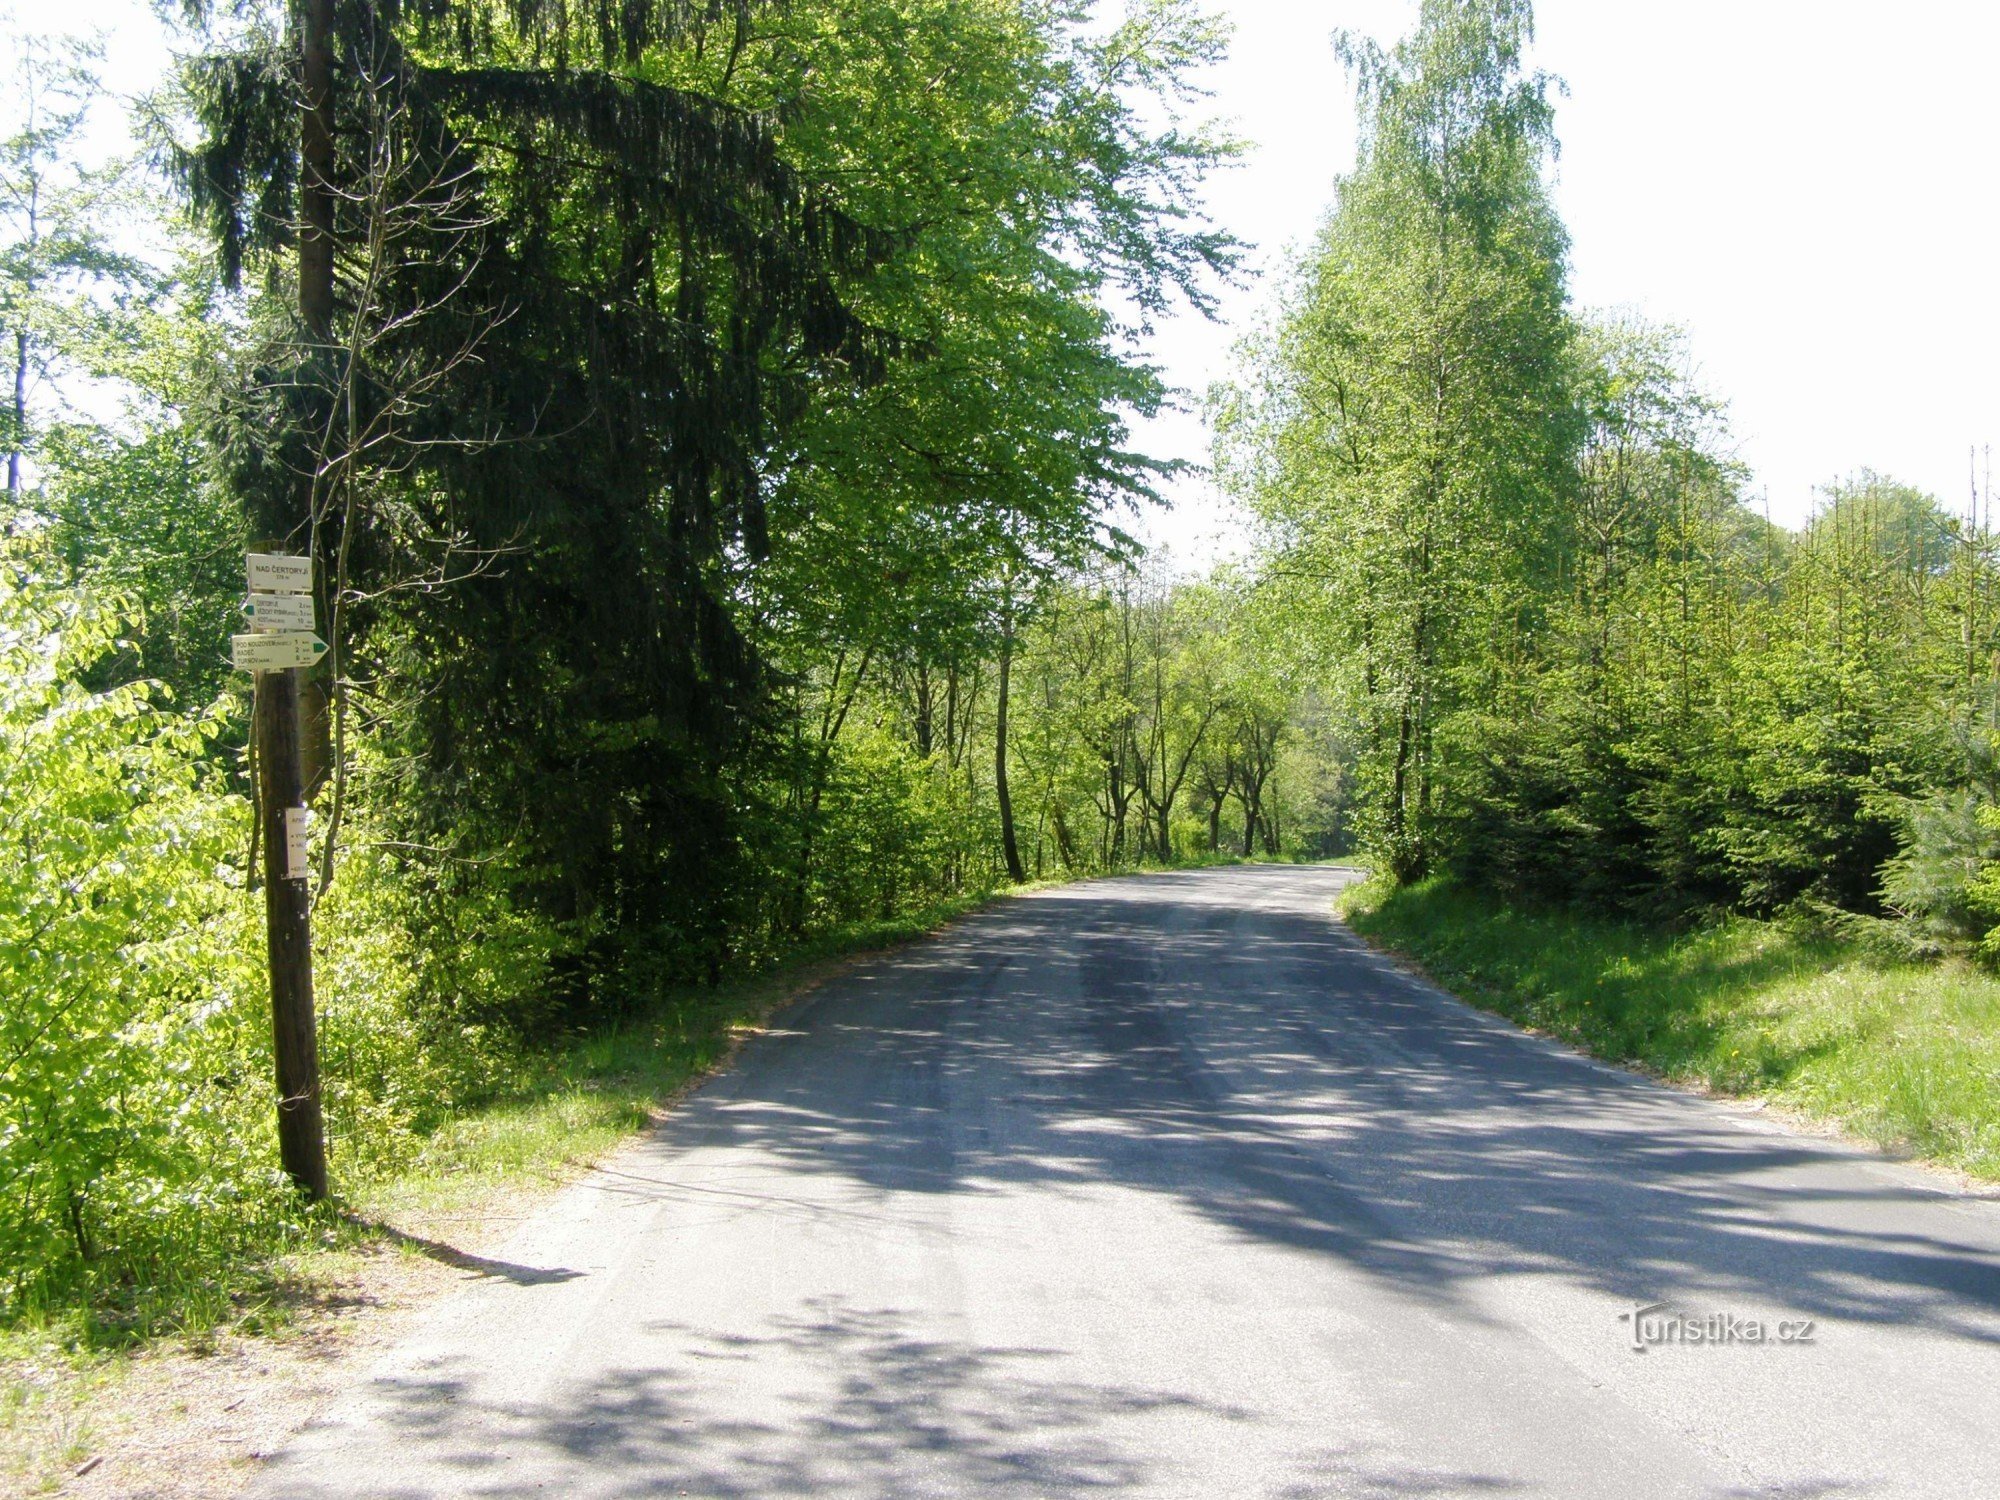 Čertoryjá 上方的旅游十字路口